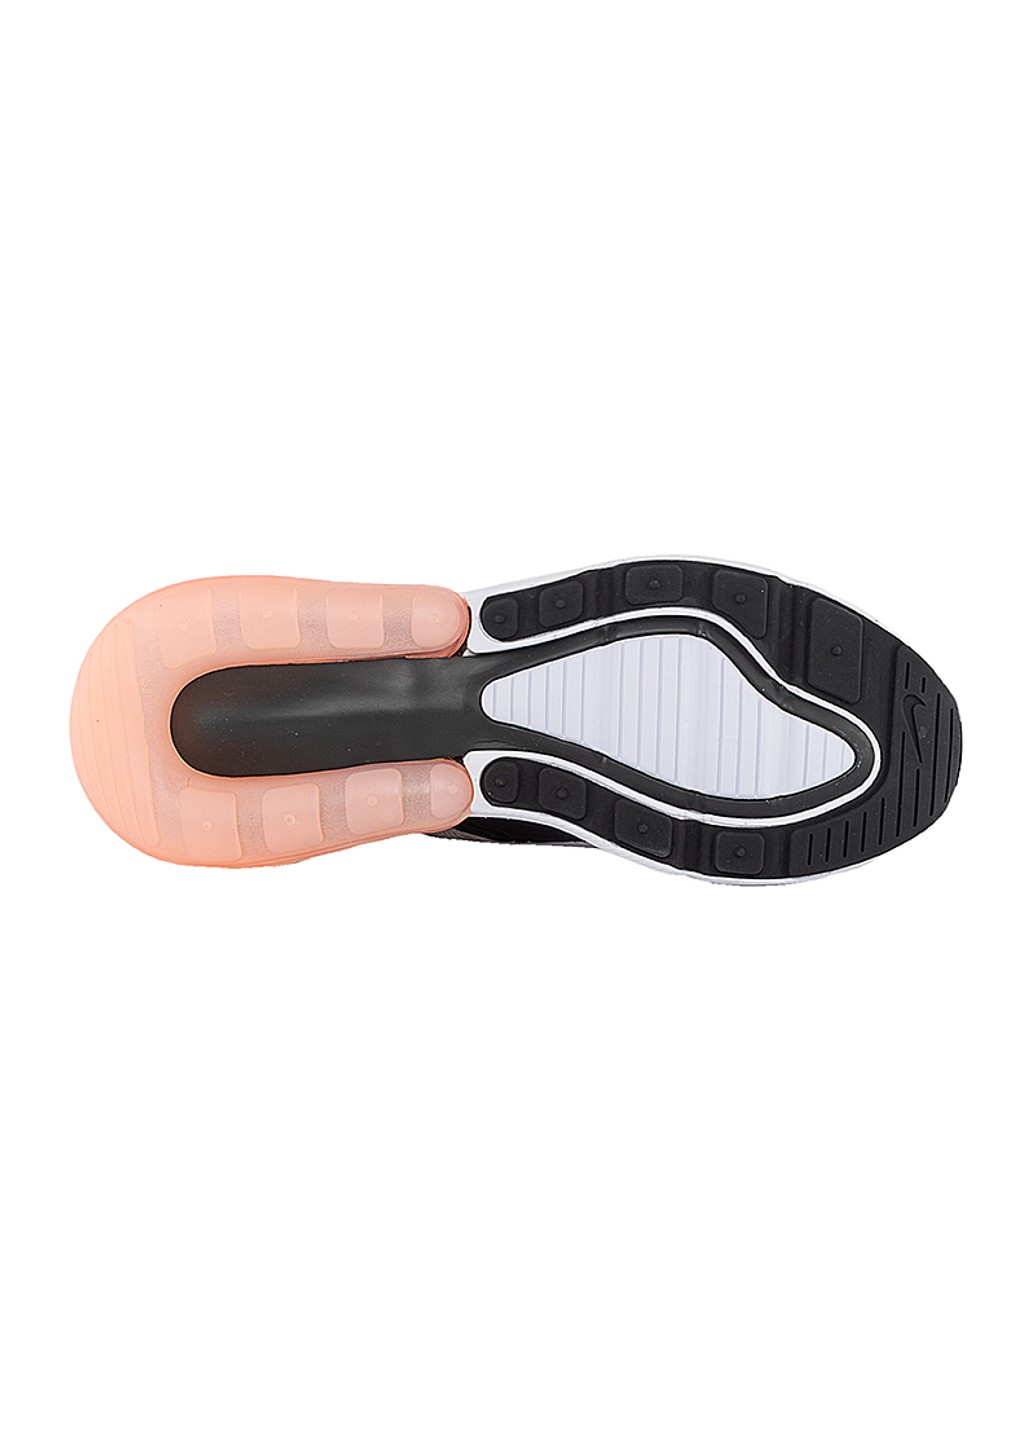 Цветные демисезонные кроссовки air max 270 (gs) Nike